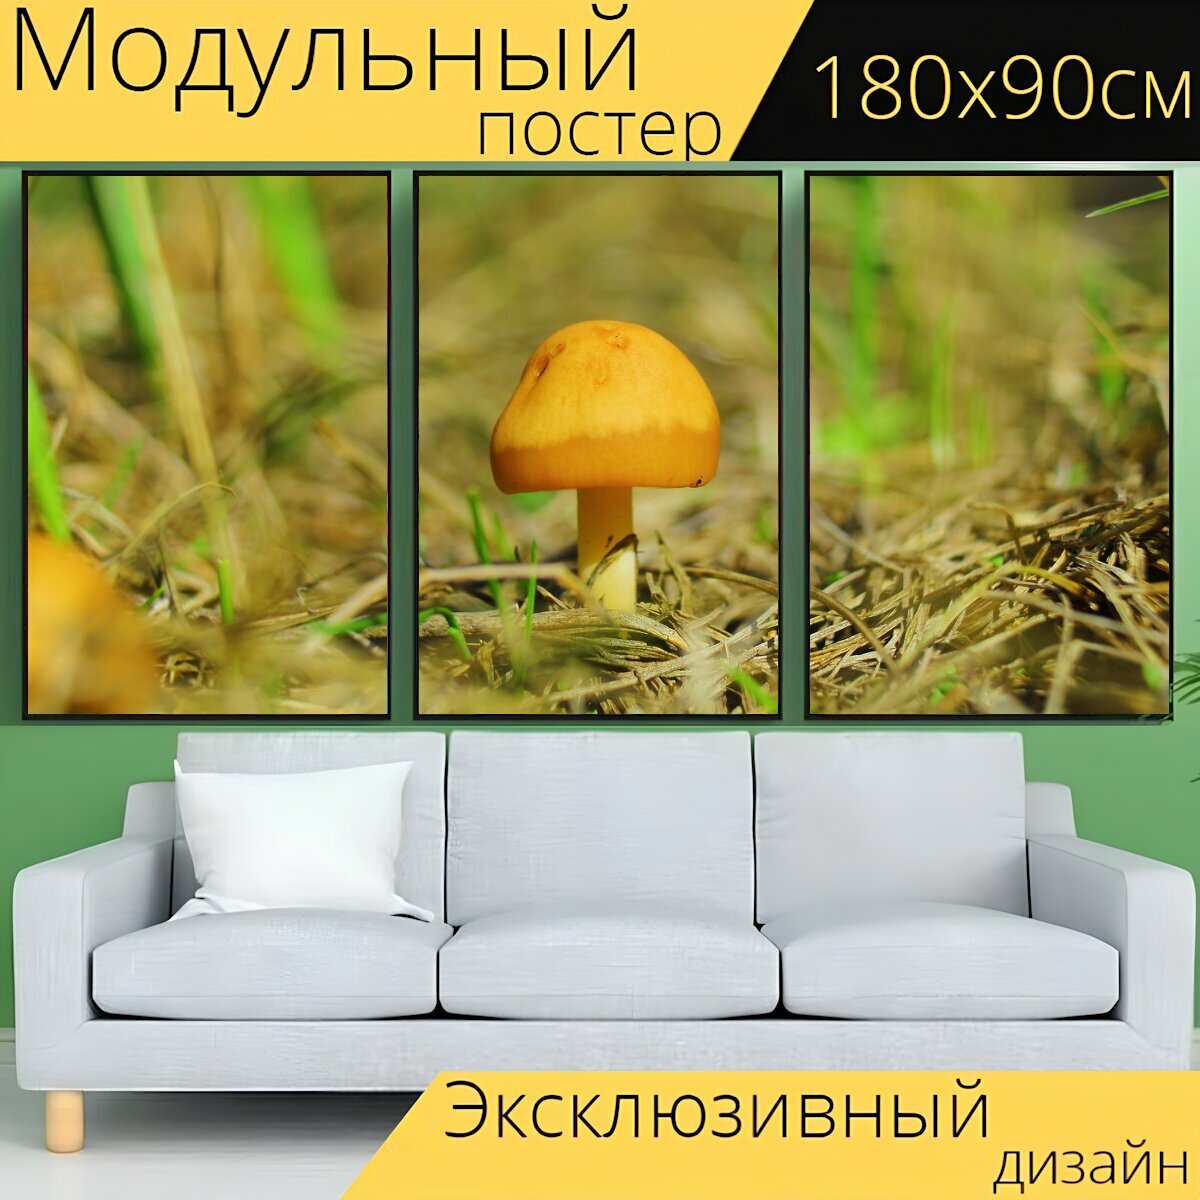 Модульный постер "Гриб, грибок, грибы" 180 x 90 см. для интерьера